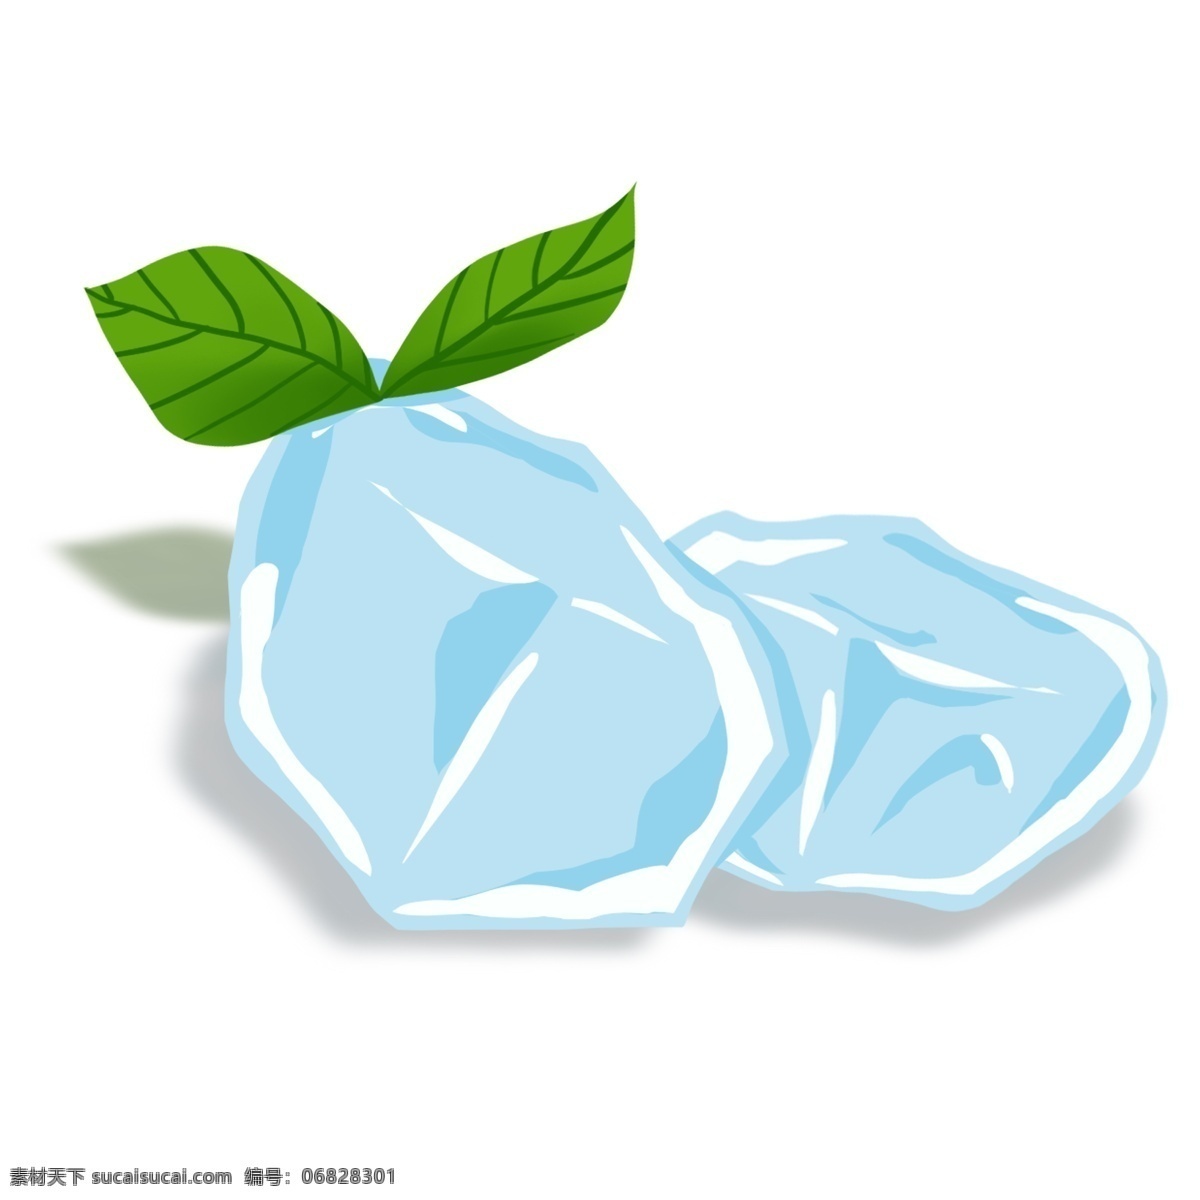 蓝色 冰块 绿叶 插画 蓝色冰块 绿叶插画 透明冰块 两块冰块 蓝色透明冰块 冰 夏季 凉爽的冰块